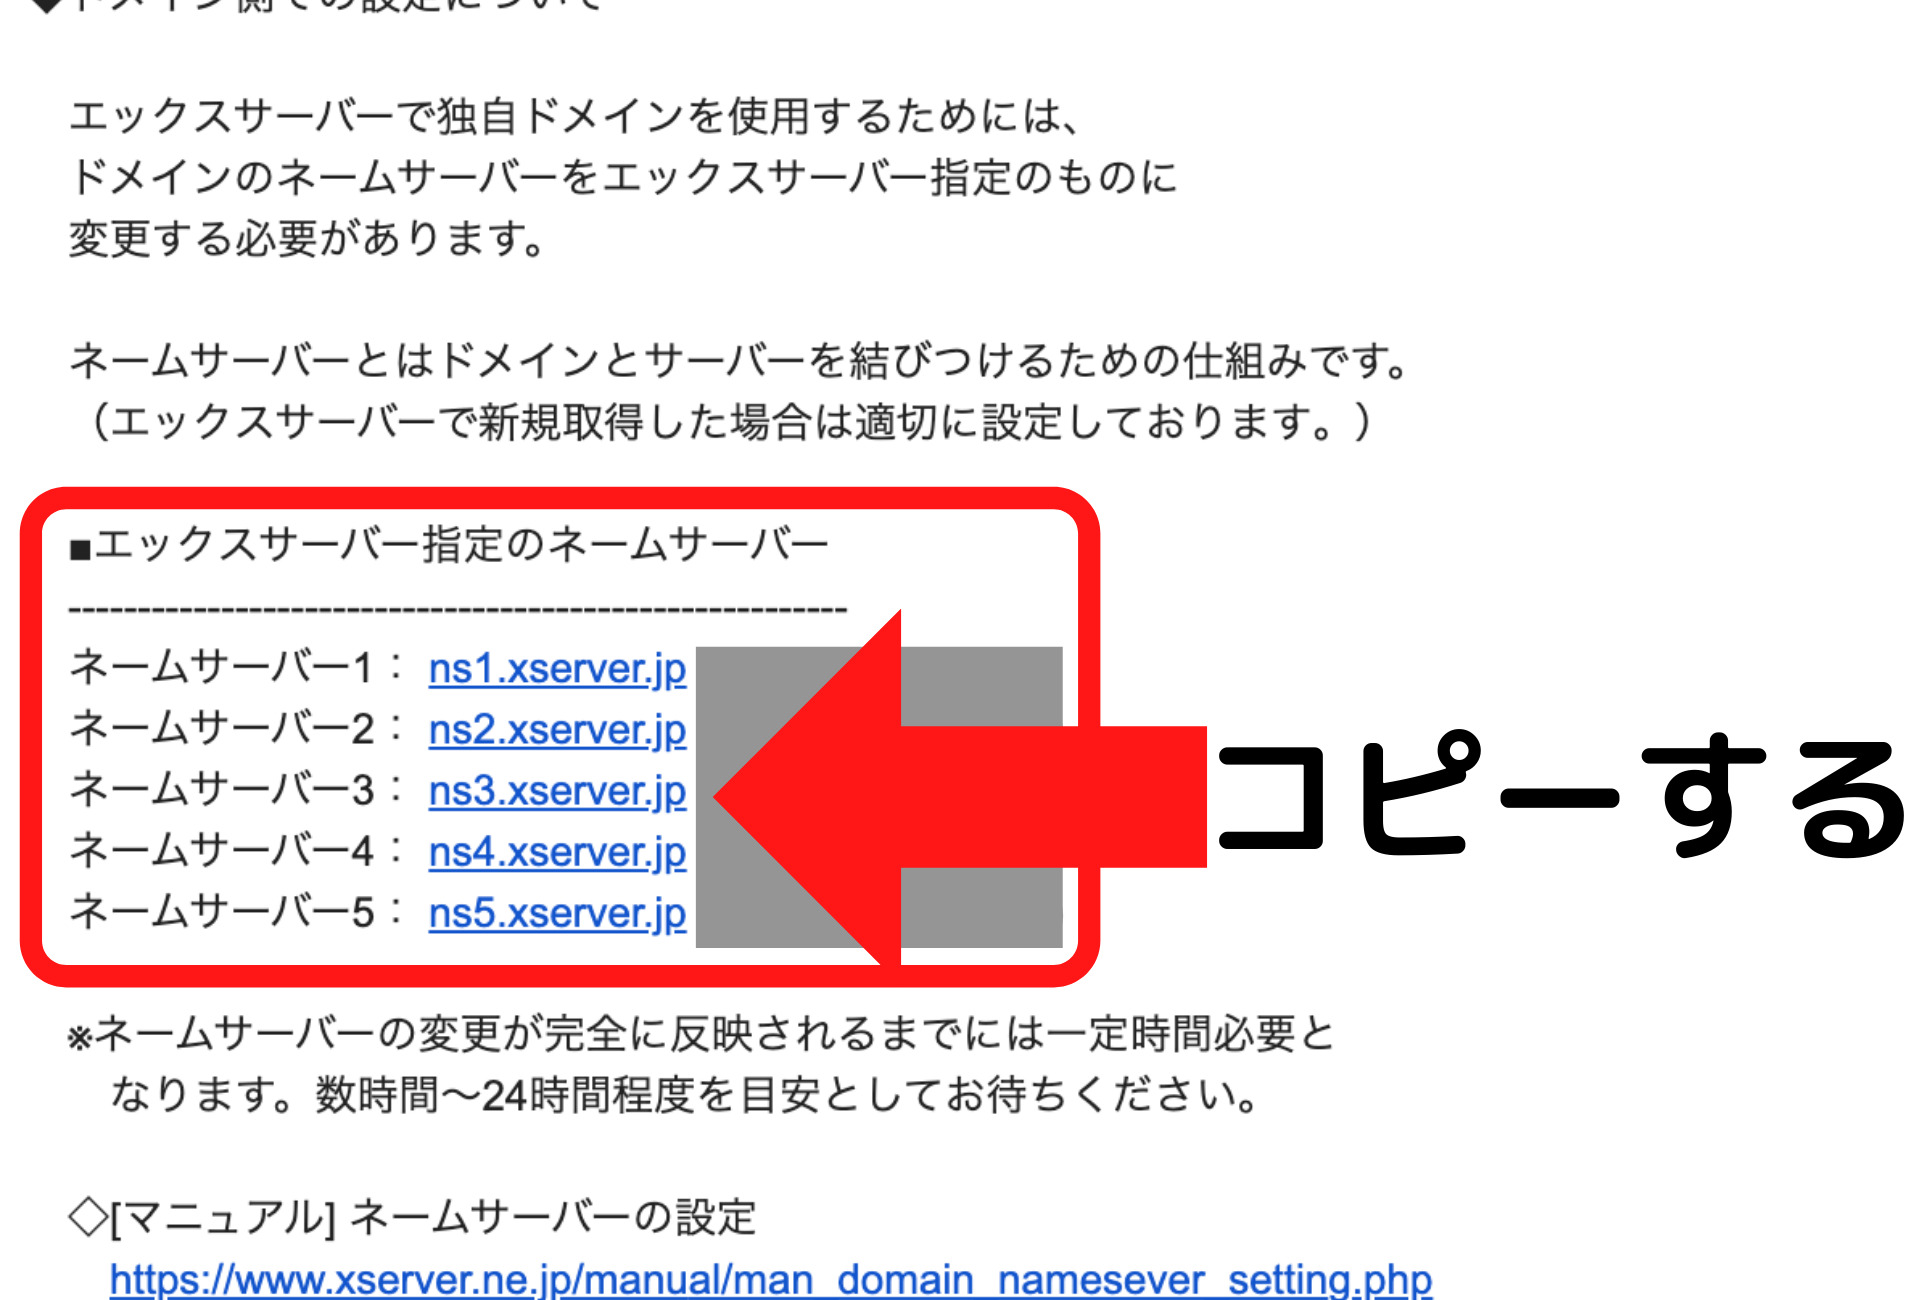 【Xserver】■重要■サーバーアカウント設定完了のお知らせ